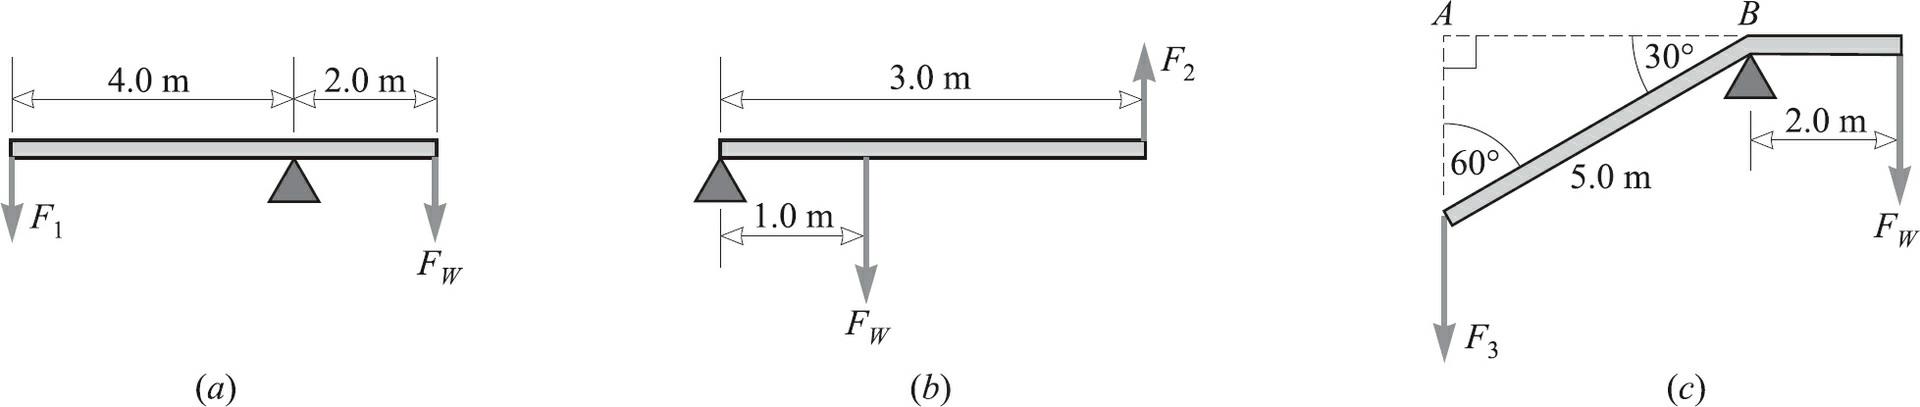 F 4.0 m (a) 2.0 m Fw 1.0 m 3.0 m Fw (b) F2 A 60 F3 30 5.0 m (c) B 2.0 m Fw